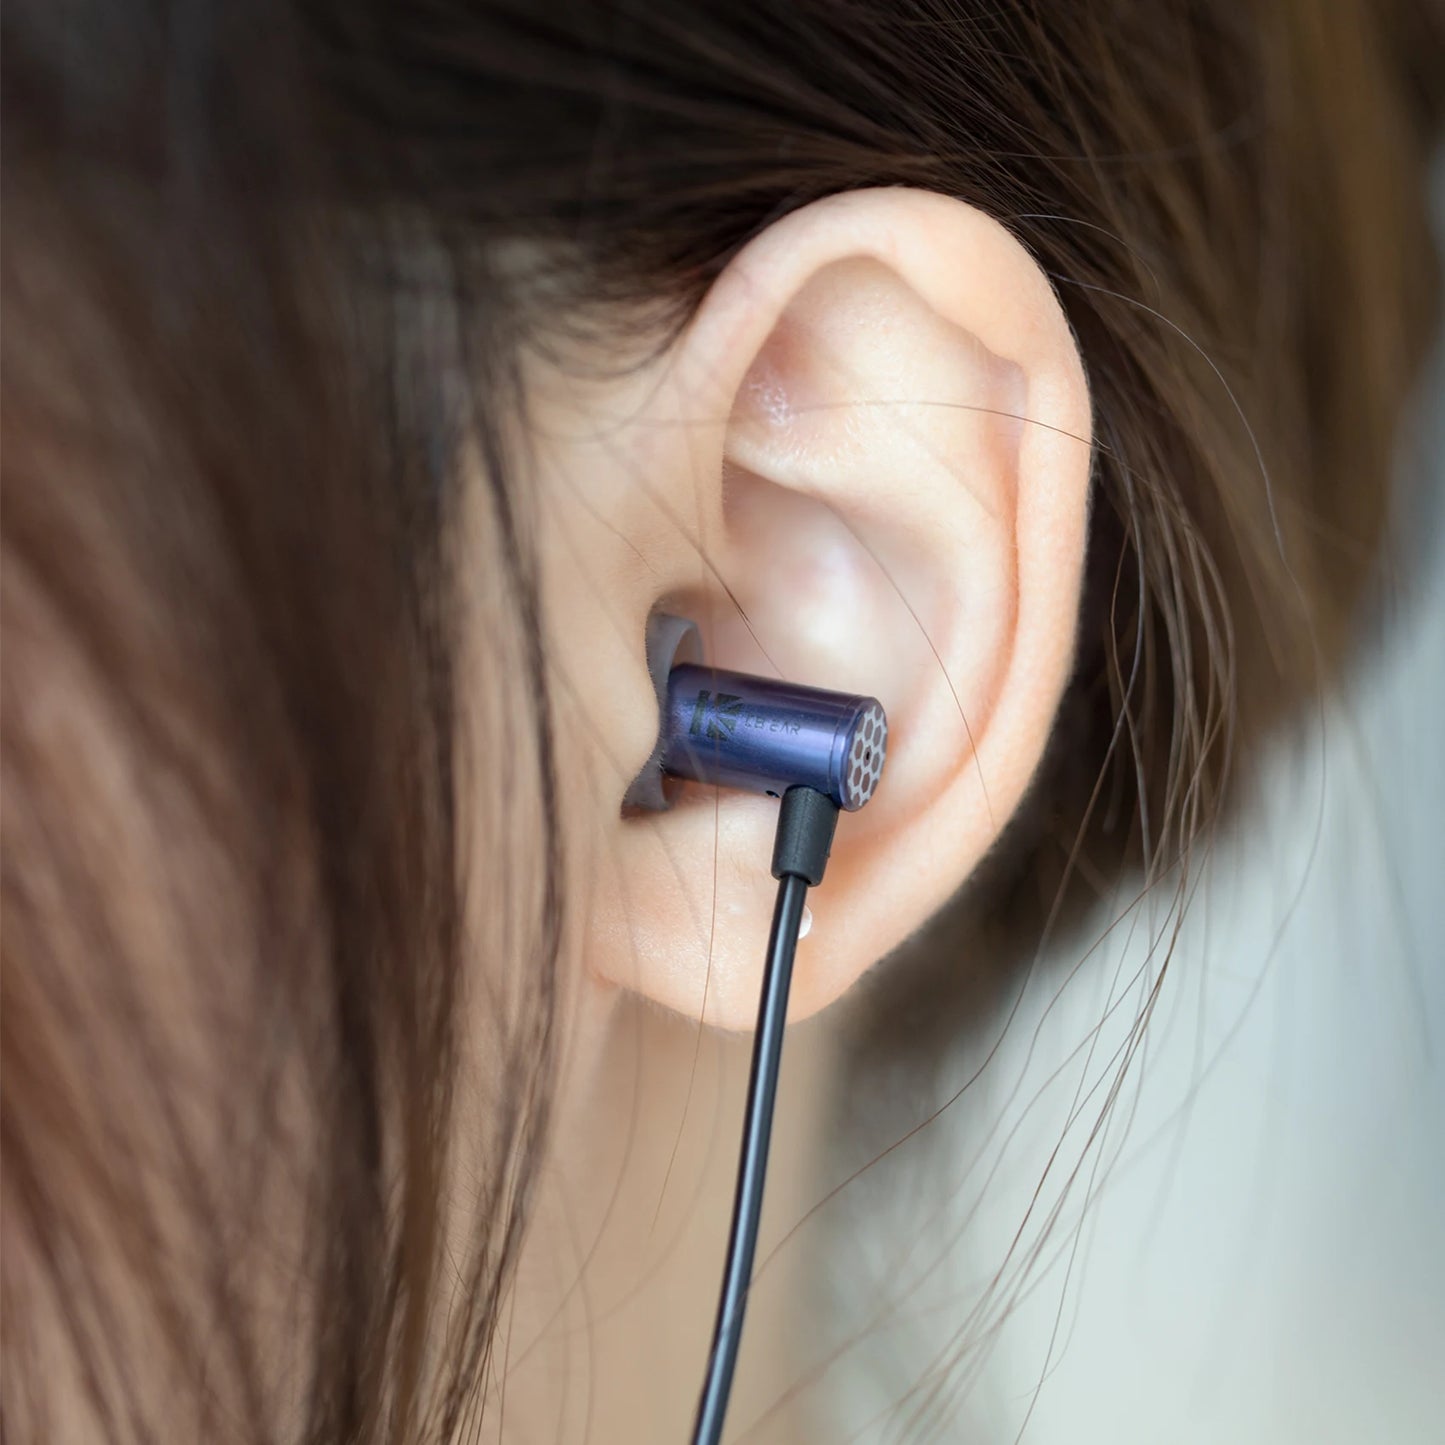 KBEAR Little Q 6mm Composite Diaphragm Wired In Ear Earphone